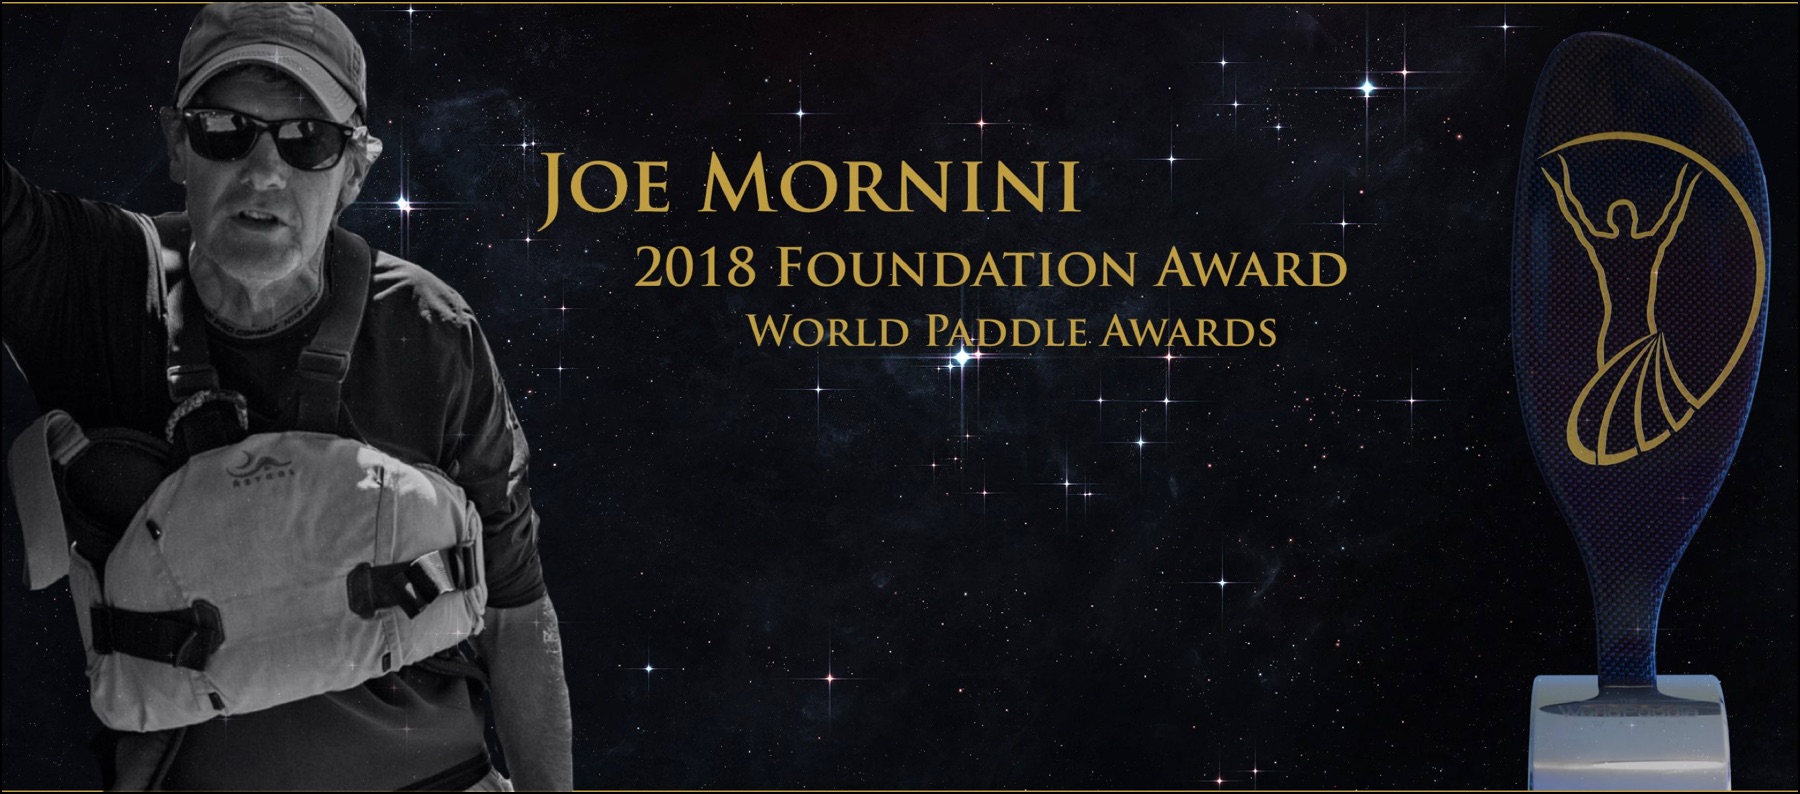 Joe Mornini Team River Runner canoe kayak world paddle awards 2018 foundation award war veterans blind 